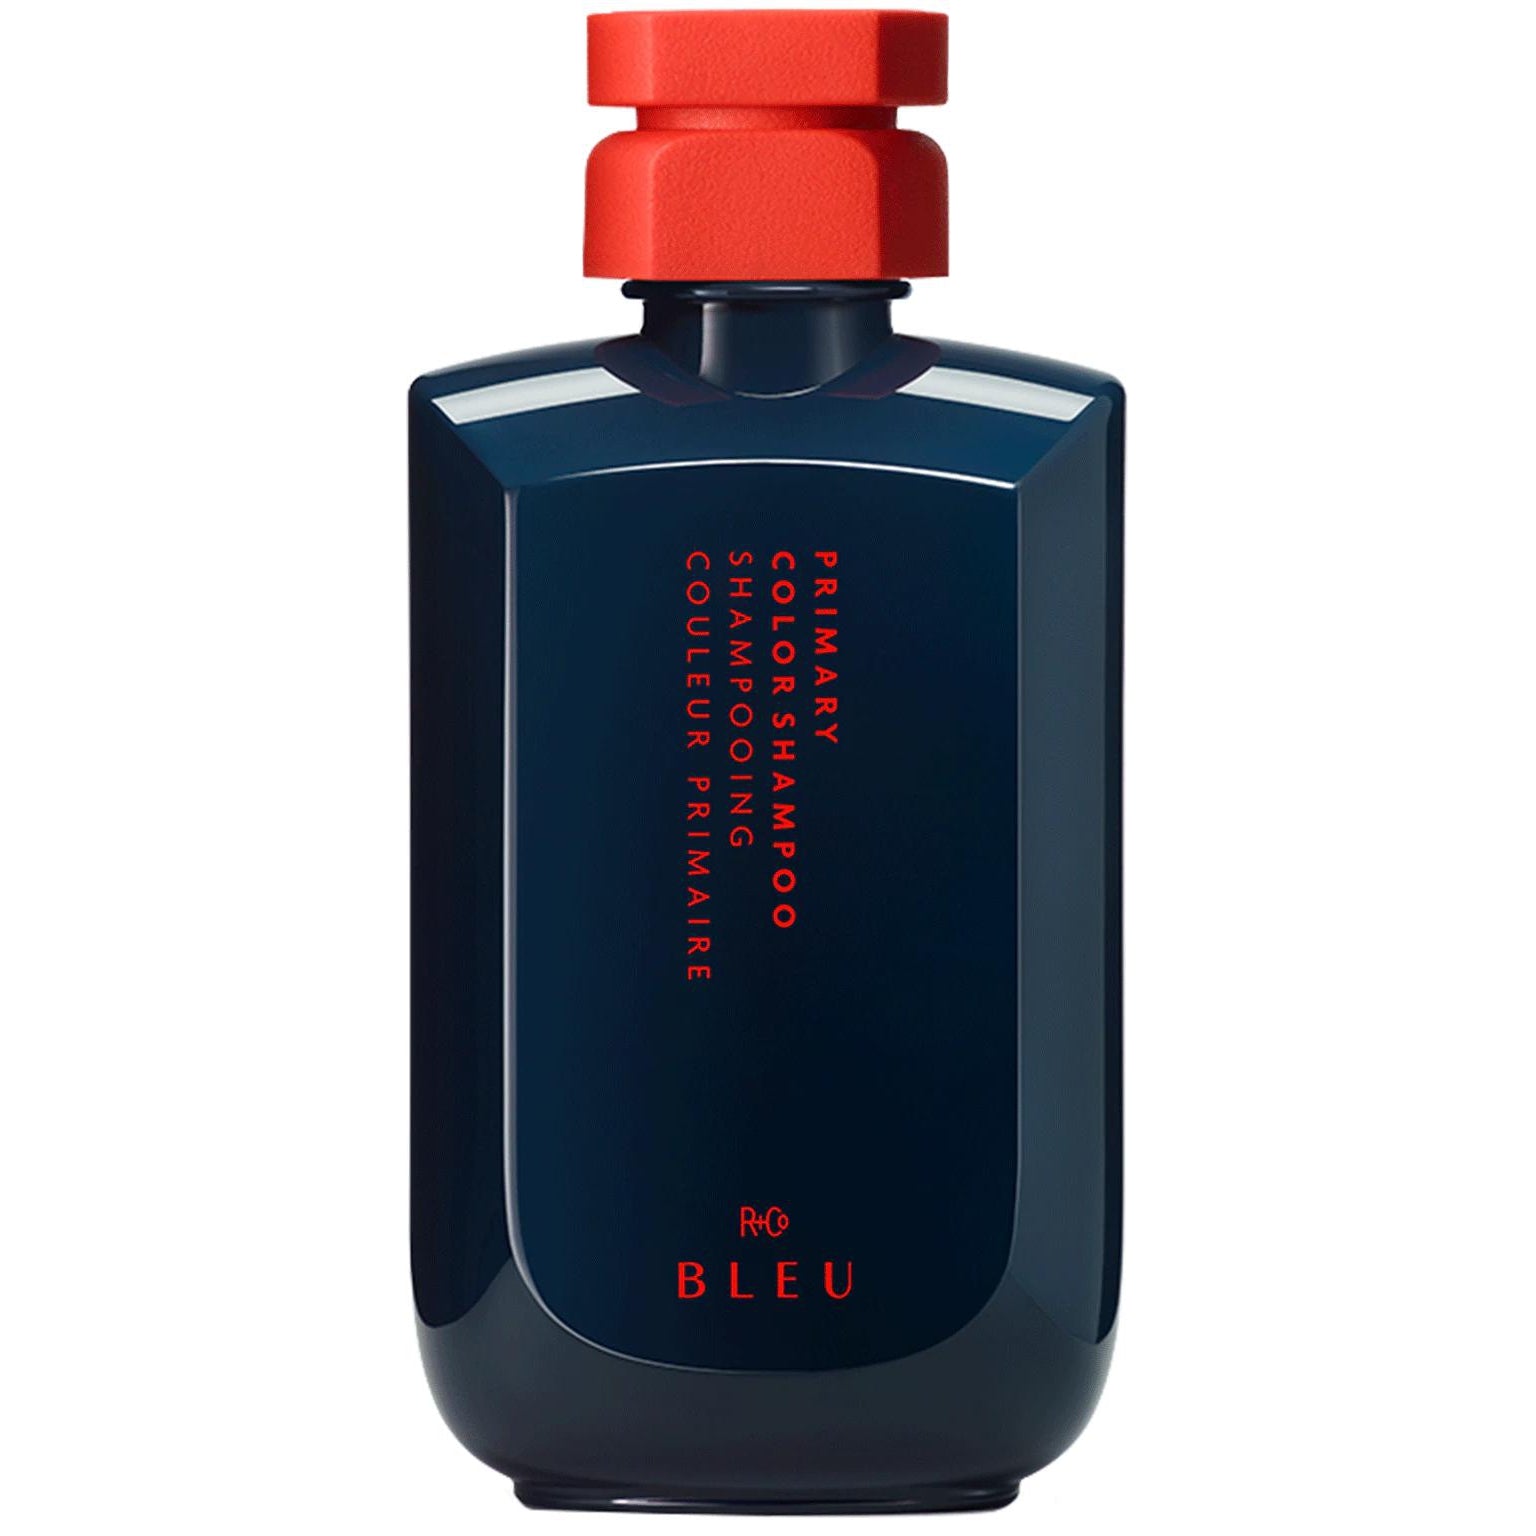 R+Co Bleu PRIMARY COLOUR SHAMPOO